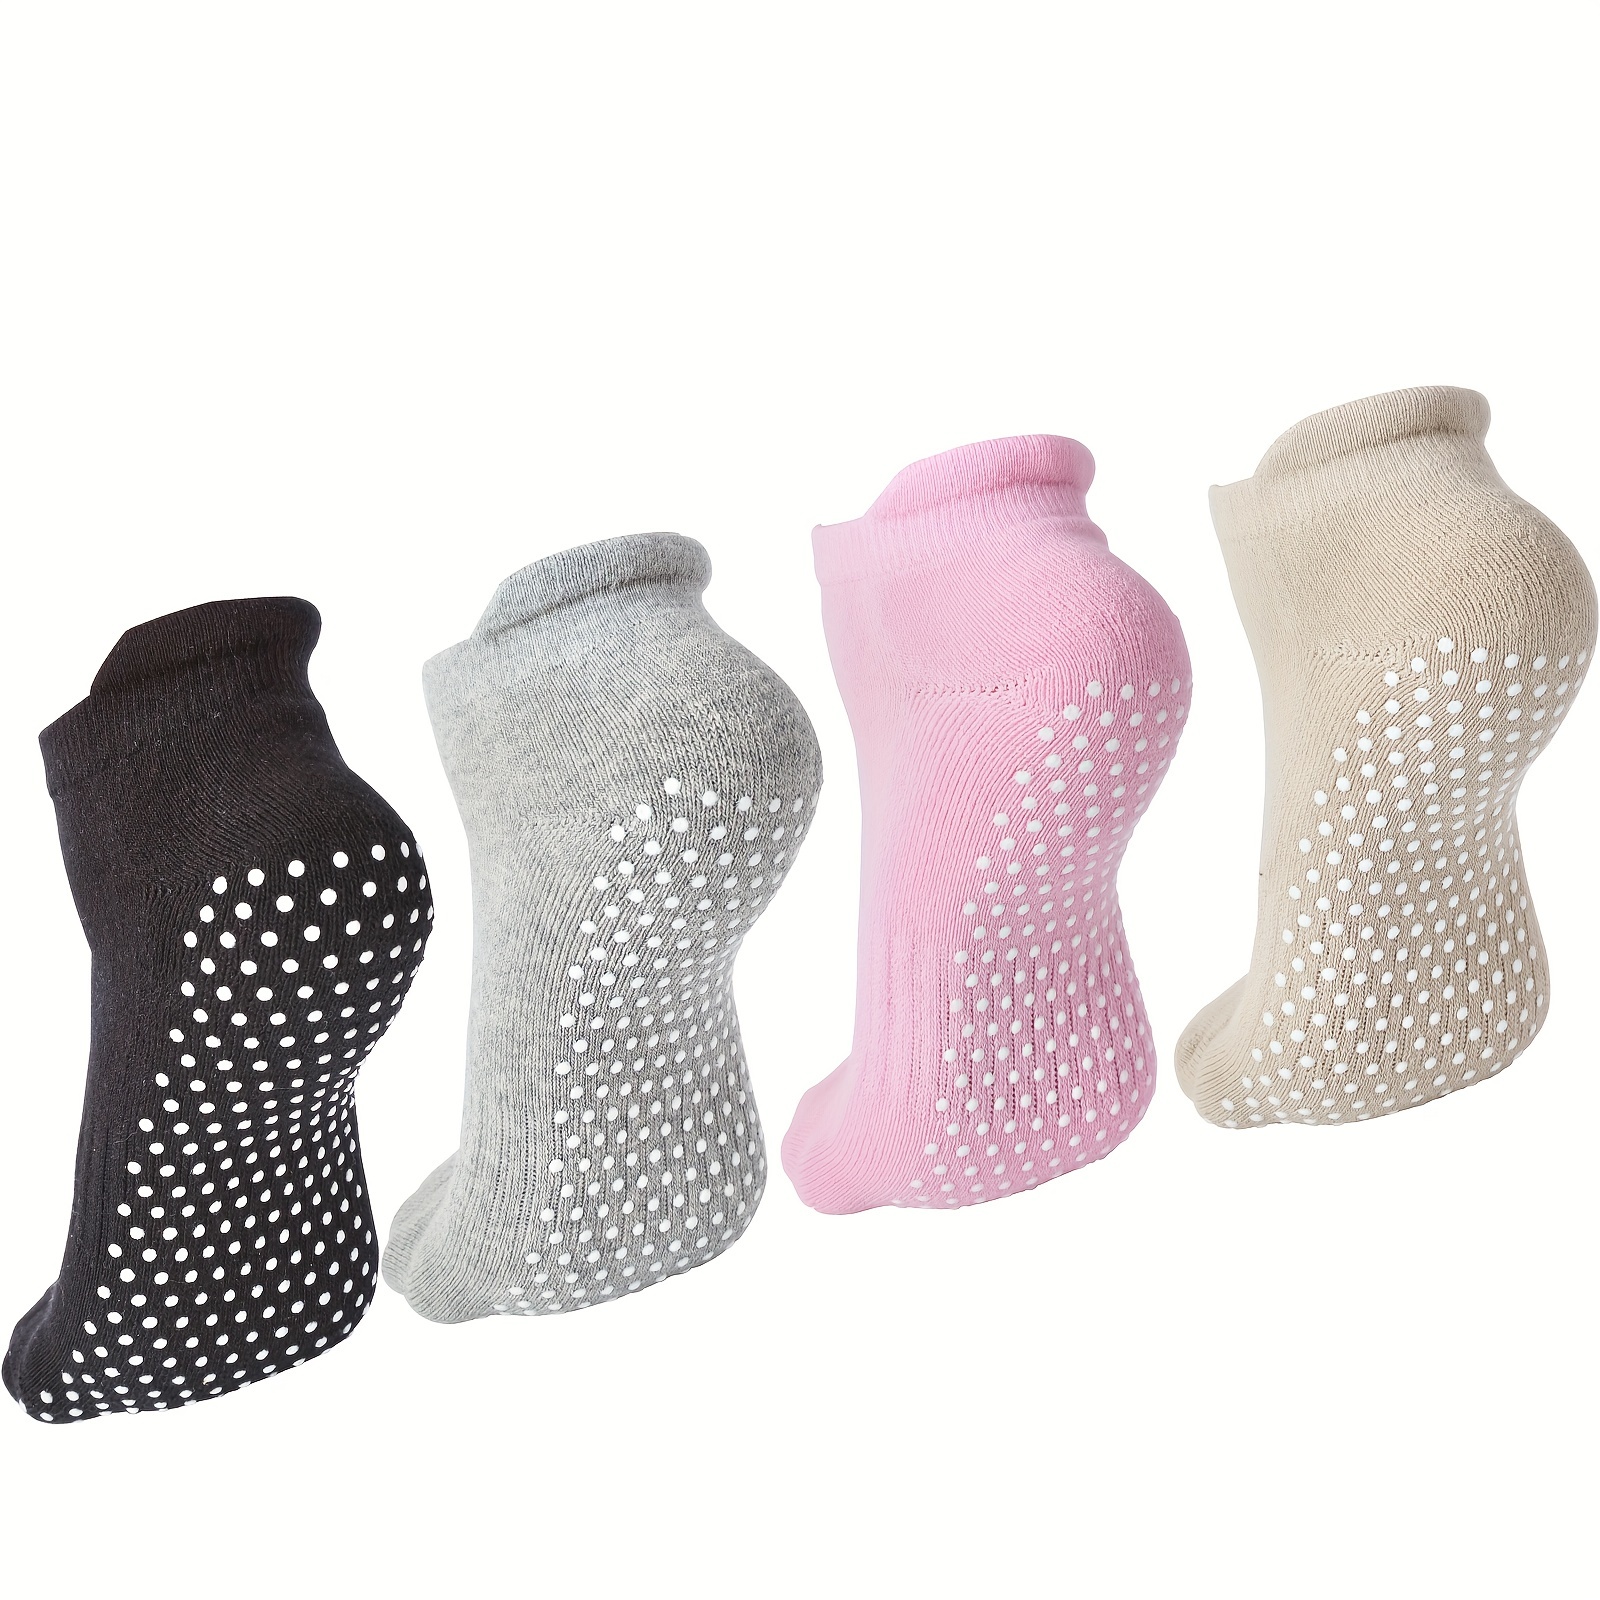 8 Pairs Kids Non Slip Socks Grip Socks Athletic Yoga Socks for Boys Girls  Pilates Dance Yoga Gym Hospital